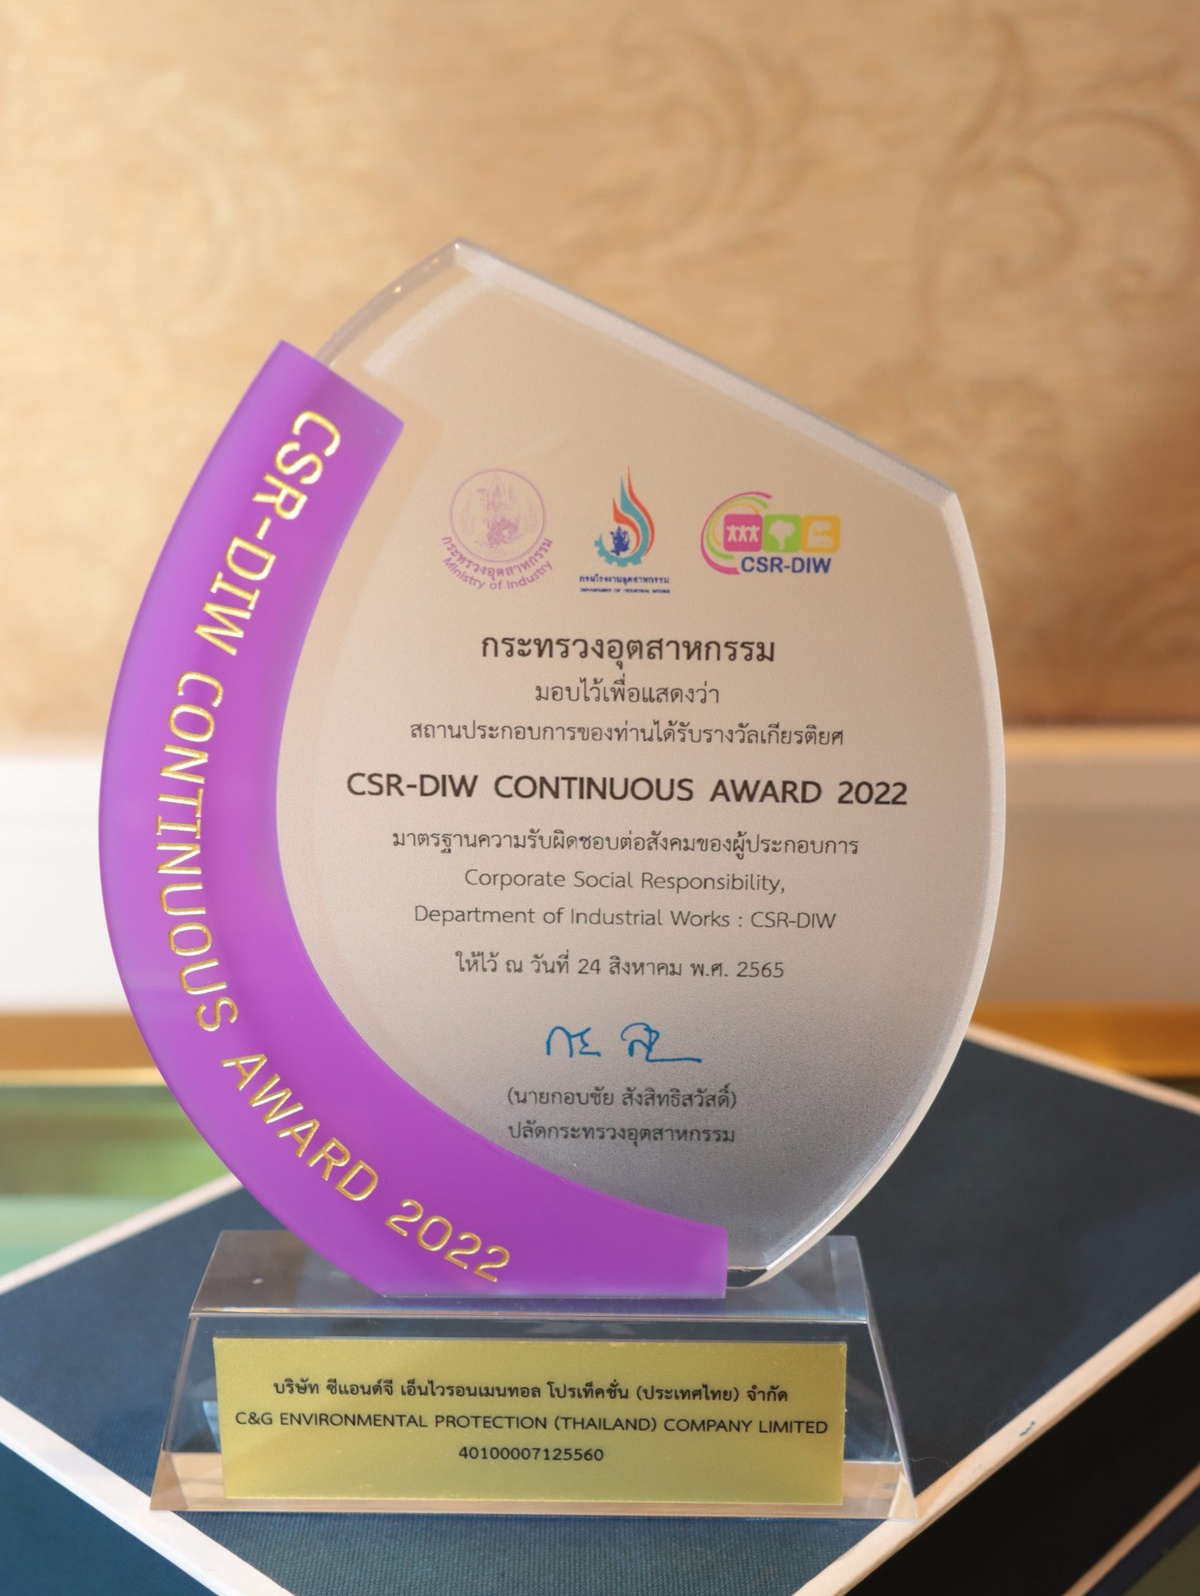 ซีแอนด์จี คว้ารางวัล CSR-DIW Continuous Award 2022 ต่อเนื่องเป็นปีที่ 3 ตอกย้ำมาตรฐานดำเนินกิจการด้วยความรับผิดชอบต่อสังคมและชุมชนอย่างยั่งยืน